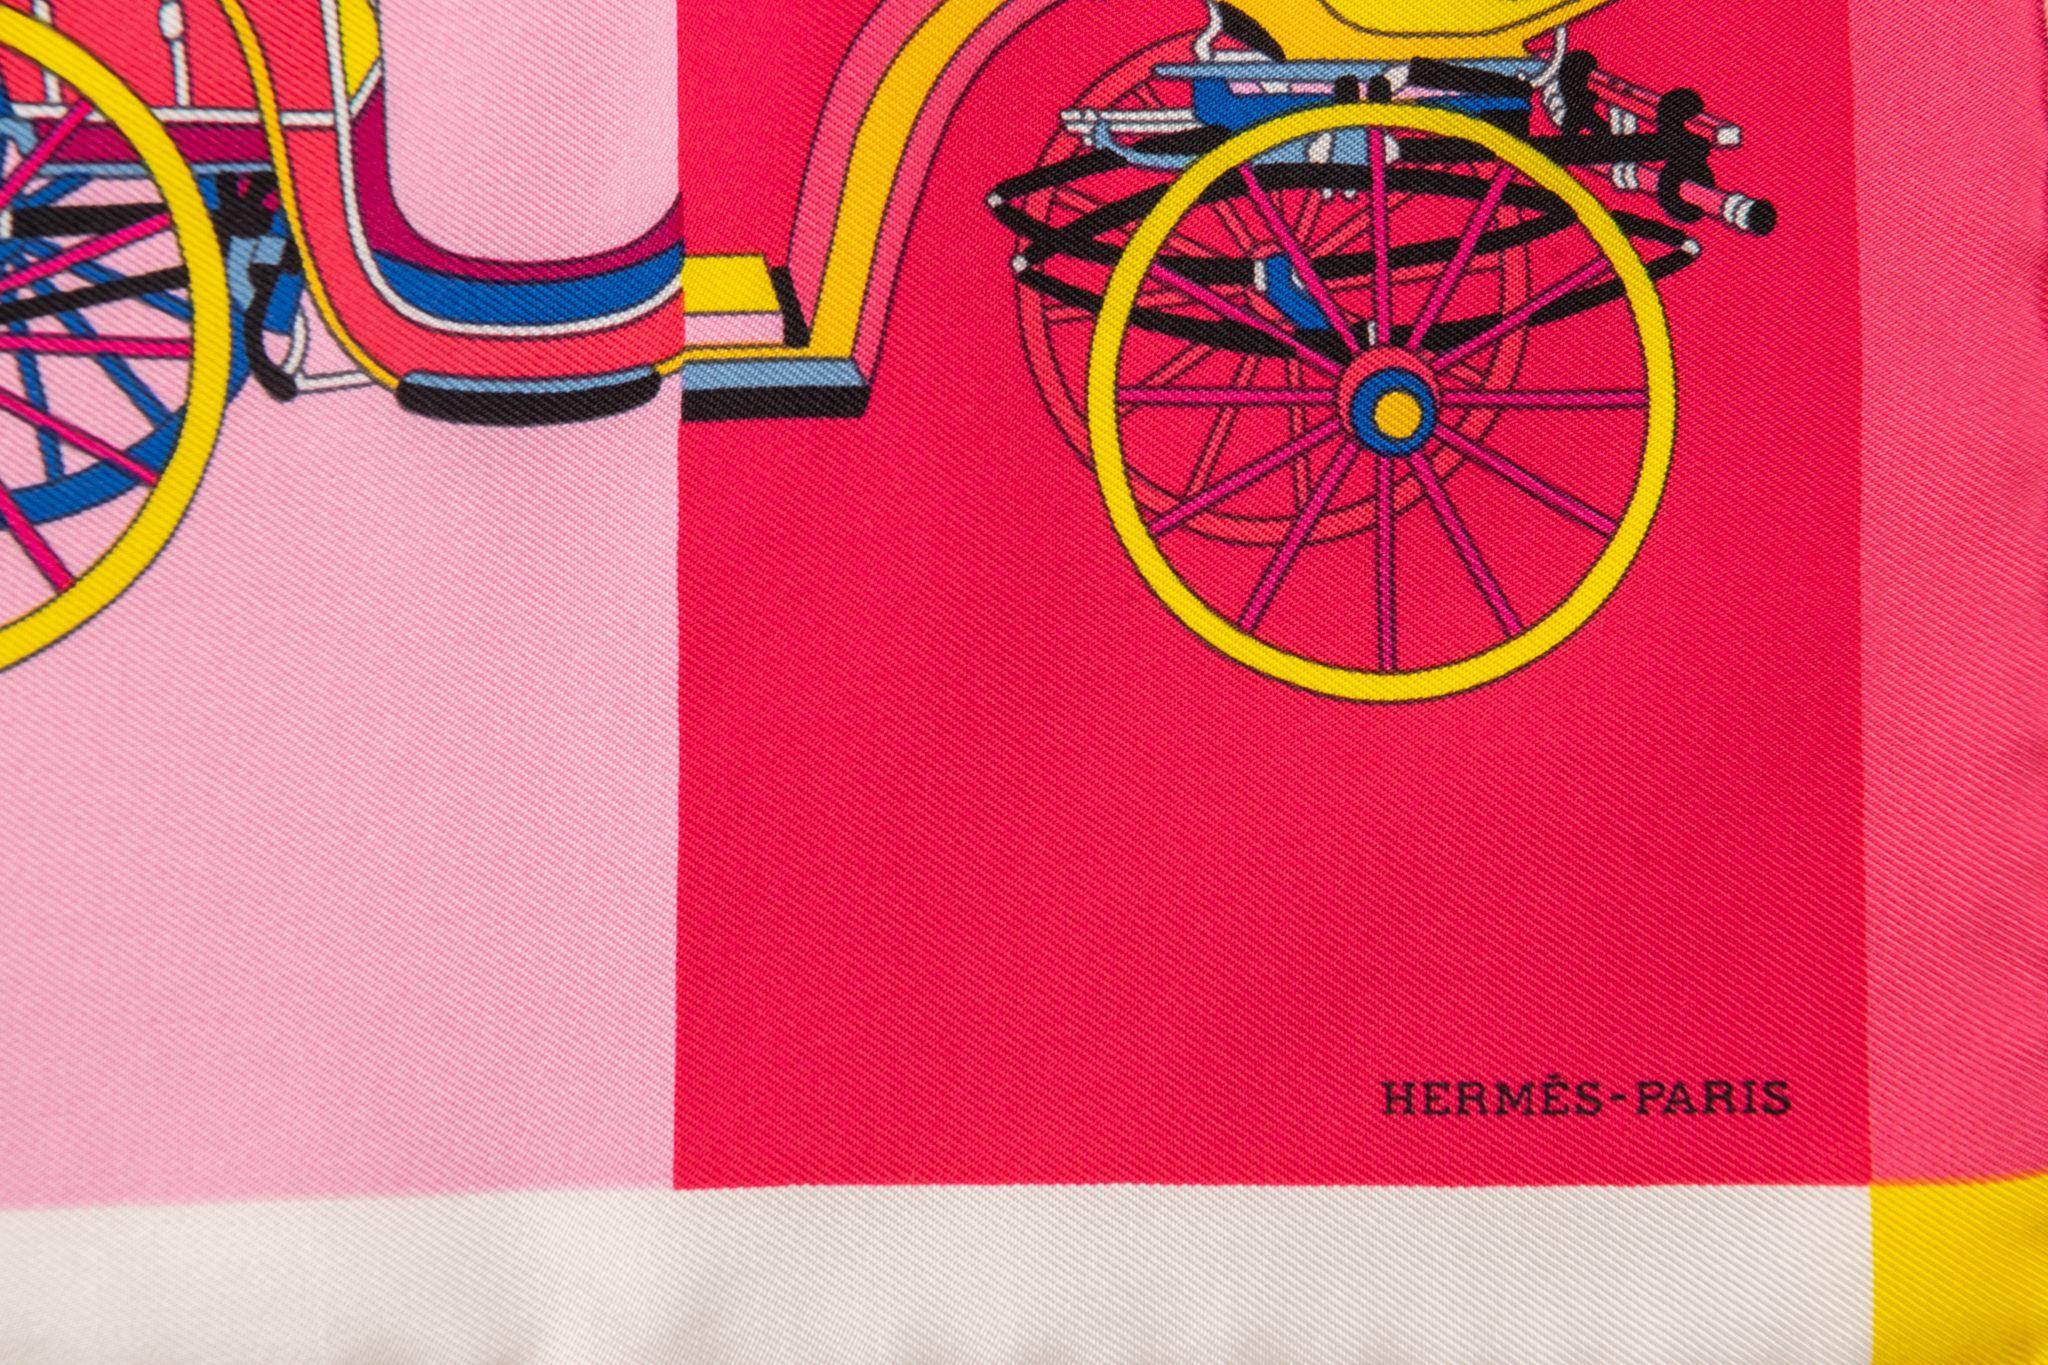 Hermès Marke neue mehrfarbige Kutschen Seide gavroche. Von Hand gerollte Kanten.
Kommt mit Originalverpackung.